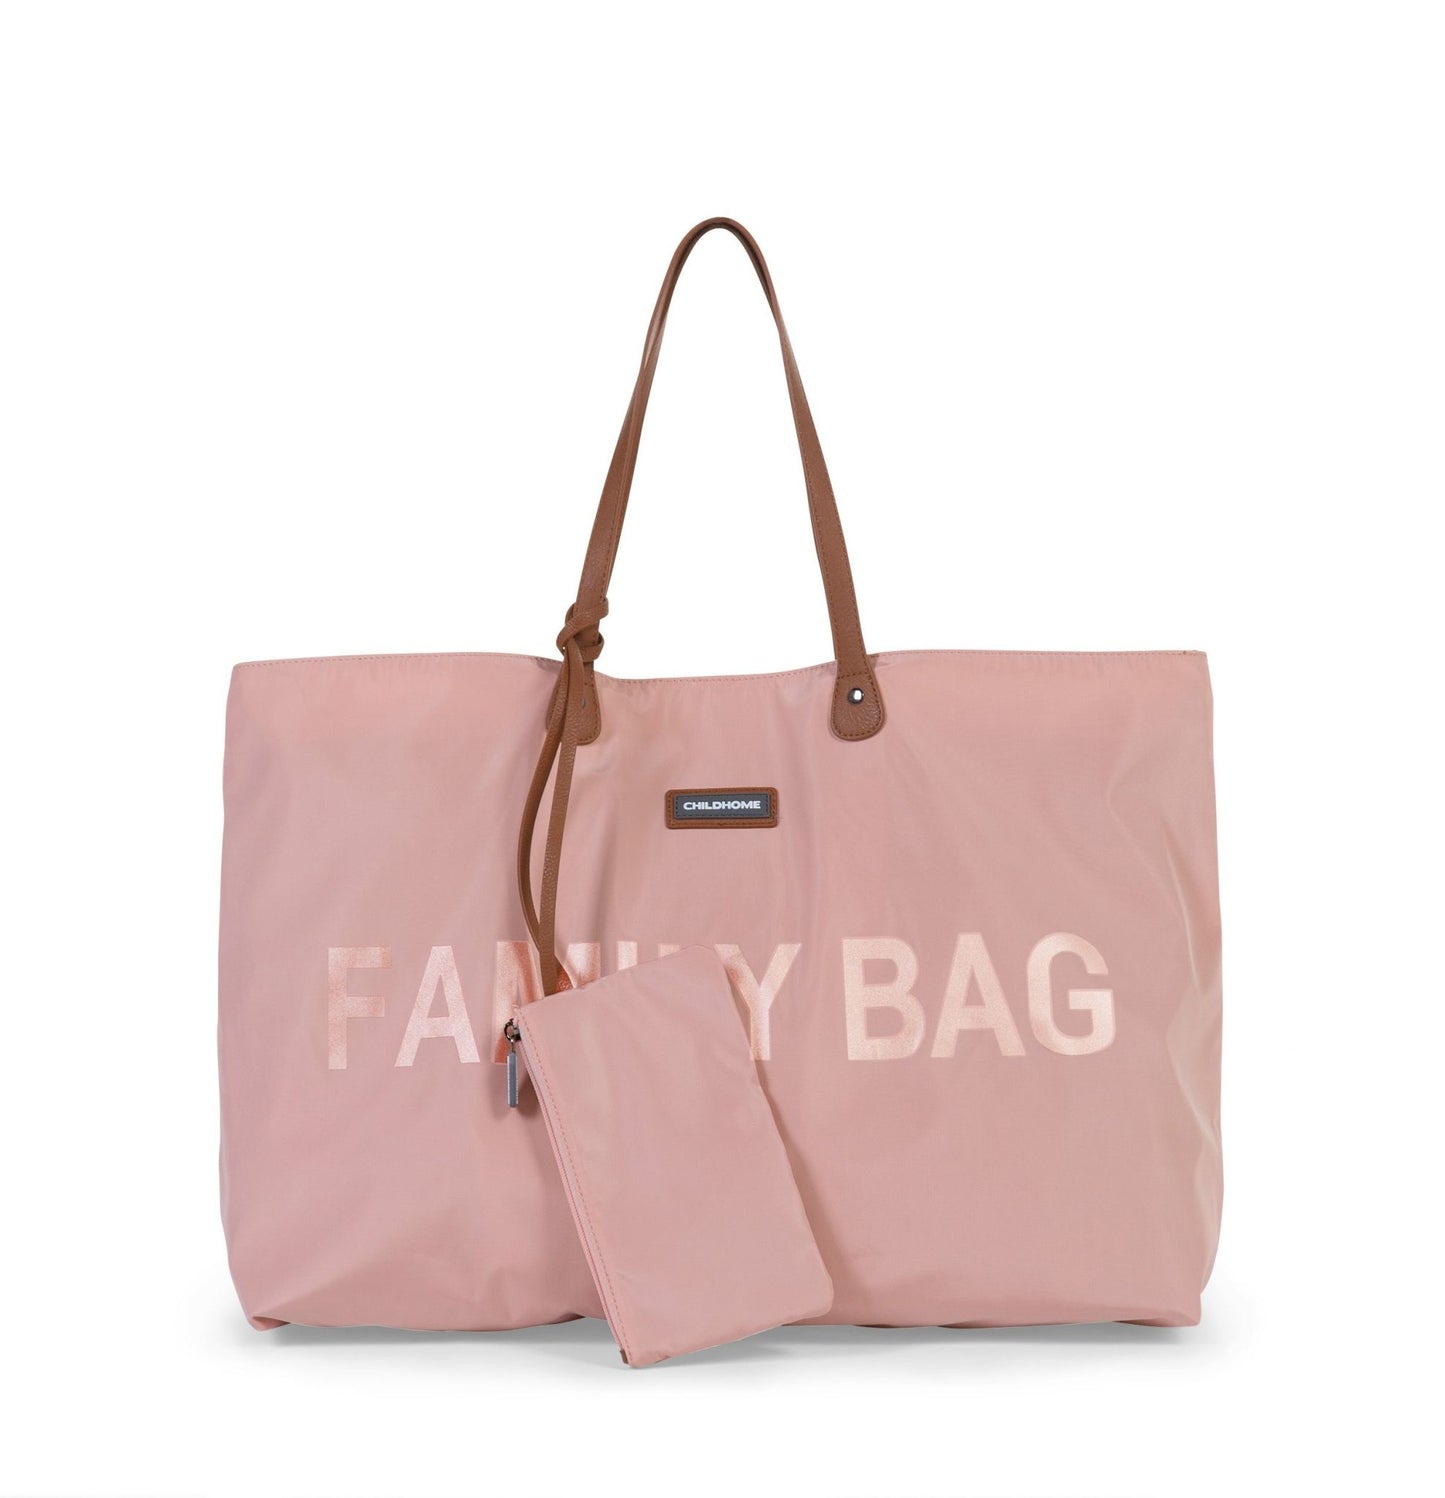 Family Bag Verzorgingstas - Roze Koper